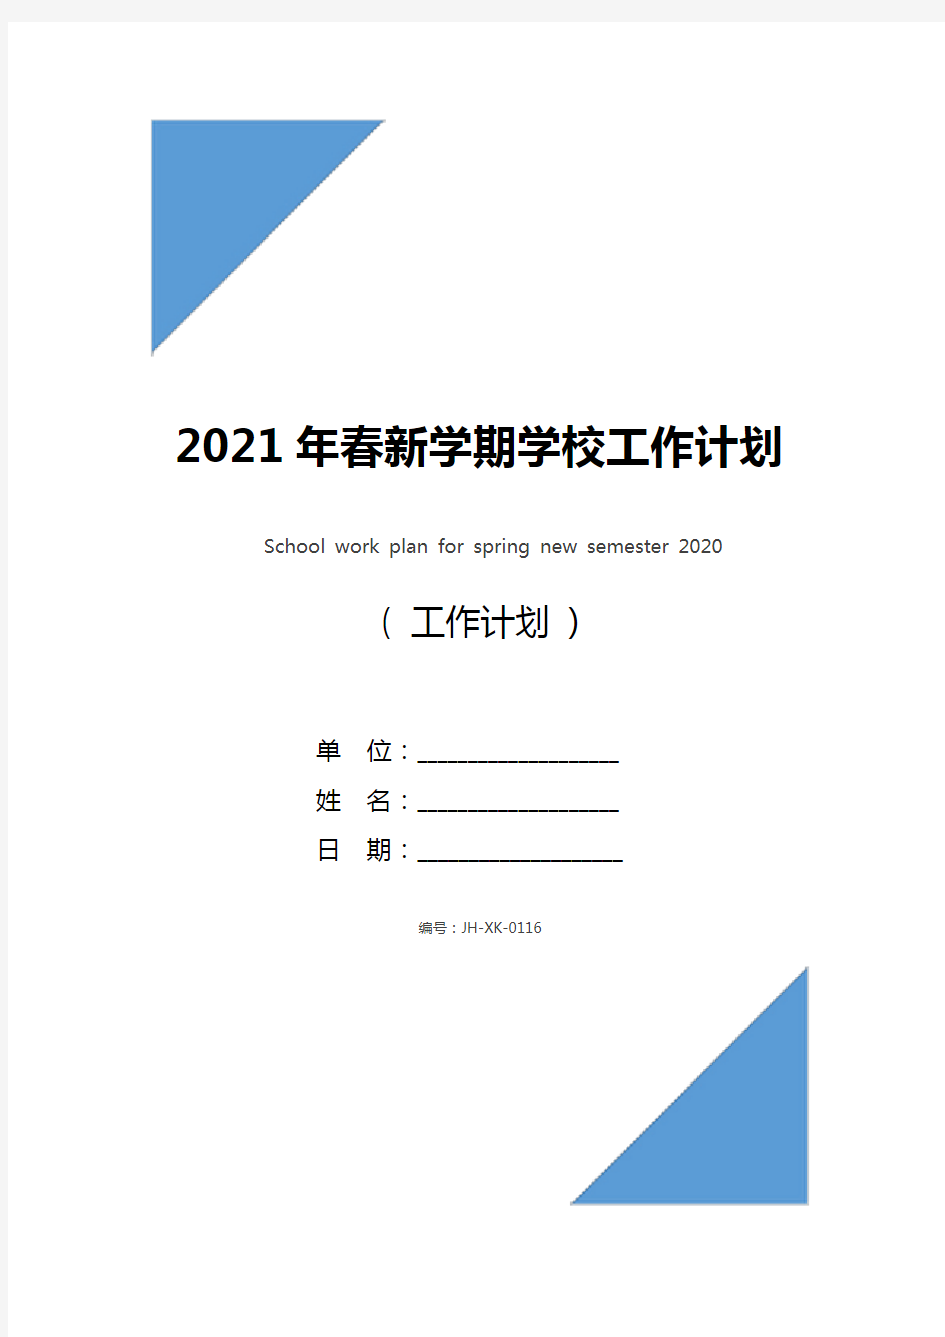 2021年春新学期学校工作计划(标准版)